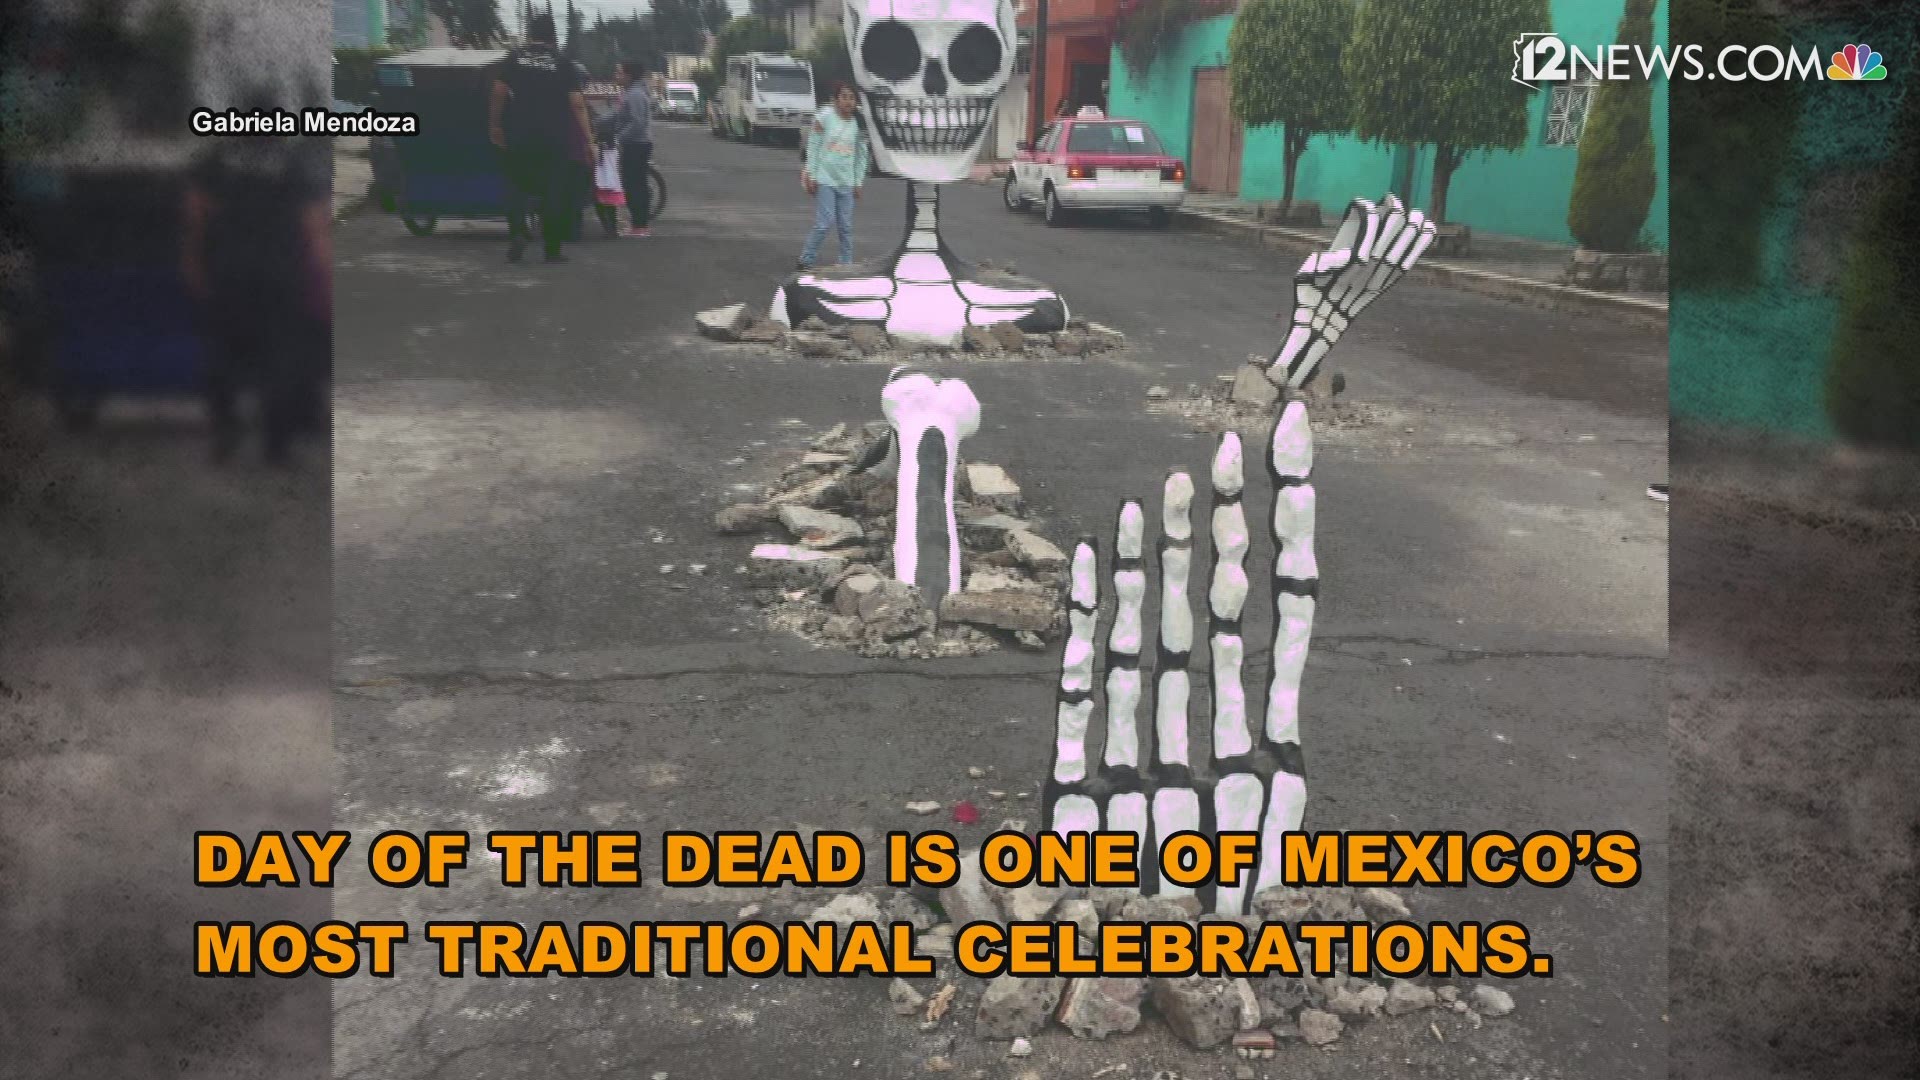 El grupo cultural Indios Yaocalli monta una exhibición de calaveras que emergen del pavimento para promover y mantener las tradiciones mexicanas vivas. Las calaveras